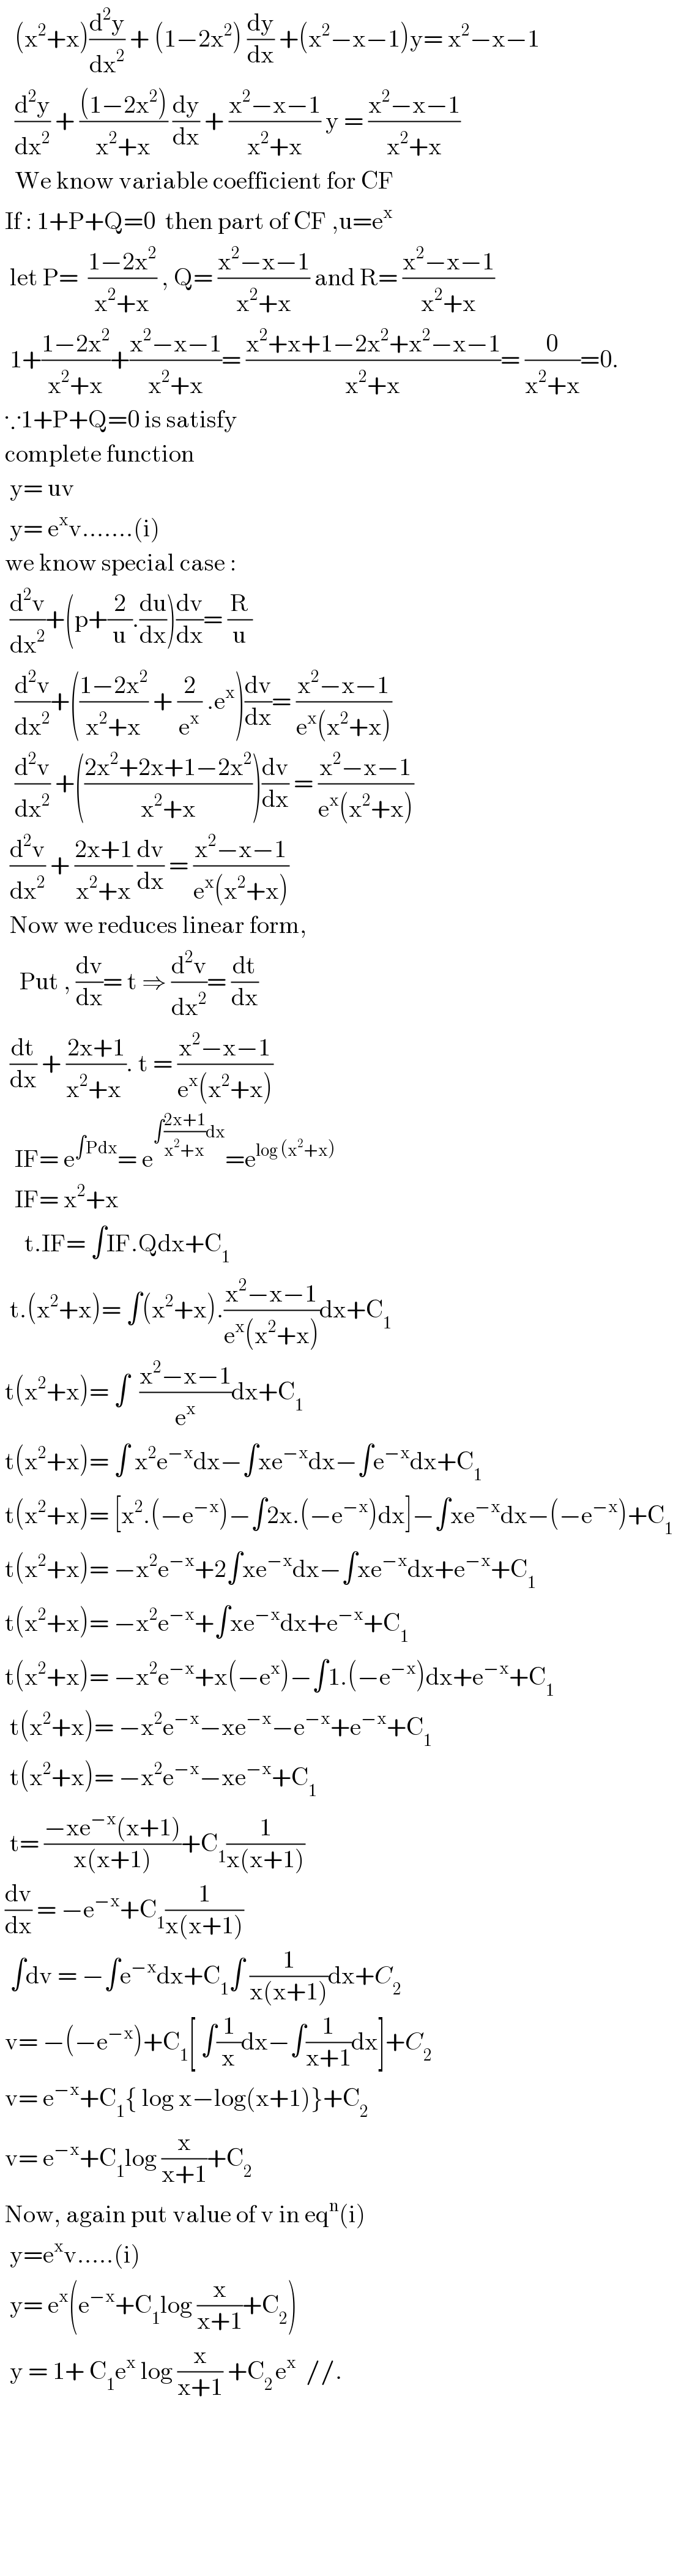    (x^2 +x)(d^2 y/dx^2 ) + (1−2x^2 ) (dy/dx) +(x^2 −x−1)y= x^2 −x−1     (d^2 y/dx^2 ) + (((1−2x^2 ))/(x^2 +x)) (dy/dx) + ((x^2 −x−1)/(x^2 +x)) y = ((x^2 −x−1)/(x^2 +x))     We know variable coefficient for CF    If : 1+P+Q=0  then part of CF ,u=e^x     let P=  ((1−2x^2 )/(x^2 +x)) , Q= ((x^2 −x−1)/(x^2 +x)) and R= ((x^2 −x−1)/(x^2 +x))    1+((1−2x^2 )/(x^2 +x))+((x^2 −x−1)/(x^2 +x))= ((x^2 +x+1−2x^2 +x^2 −x−1)/(x^2 +x))= (0/(x^2 +x))=0.   ∵1+P+Q=0 is satisfy    complete function     y= uv    y= e^x v.......(i)   we know special case :    (d^2 v/dx^2 )+(p+(2/u).(du/dx))(dv/dx)= (R/u)     (d^2 v/dx^2 )+(((1−2x^2 )/(x^2 +x)) + (2/e^x ) .e^x )(dv/dx)= ((x^2 −x−1)/(e^x (x^2 +x)))     (d^2 v/dx^2 ) +(((2x^2 +2x+1−2x^2 )/(x^2 +x)))(dv/dx) = ((x^2 −x−1)/(e^x (x^2 +x)))    (d^2 v/dx^2 ) + ((2x+1)/(x^2 +x)) (dv/dx) = ((x^2 −x−1)/(e^x (x^2 +x)))    Now we reduces linear form,      Put , (dv/dx)= t ⇒ (d^2 v/dx^2 )= (dt/dx)    (dt/dx) + ((2x+1)/(x^2 +x )). t = ((x^2 −x−1)/(e^x (x^2 +x)))     IF= e^(∫Pdx) = e^(∫((2x+1)/(x^2 +x))dx) =e^(log (x^2 +x))      IF= x^2 +x       t.IF= ∫IF.Qdx+C_1     t.(x^2 +x)= ∫(x^2 +x).((x^2 −x−1)/(e^x (x^2 +x)))dx+C_1    t(x^2 +x)= ∫  ((x^2 −x−1)/e^x )dx+C_1    t(x^2 +x)= ∫ x^2 e^(−x) dx−∫xe^(−x) dx−∫e^(−x) dx+C_1    t(x^2 +x)= [x^2 .(−e^(−x) )−∫2x.(−e^(−x) )dx]−∫xe^(−x) dx−(−e^(−x) )+C_1    t(x^2 +x)= −x^2 e^(−x) +2∫xe^(−x) dx−∫xe^(−x) dx+e^(−x) +C_1    t(x^2 +x)= −x^2 e^(−x) +∫xe^(−x) dx+e^(−x) +C_1    t(x^2 +x)= −x^2 e^(−x) +x(−e^x )−∫1.(−e^(−x) )dx+e^(−x) +C_1     t(x^2 +x)= −x^2 e^(−x) −xe^(−x) −e^(−x) +e^(−x) +C_1     t(x^2 +x)= −x^2 e^(−x) −xe^(−x) +C_1     t= ((−xe^(−x) (x+1))/(x(x+1)))+C_1 (1/(x(x+1)))   (dv/dx) = −e^(−x) +C_1 (1/(x(x+1)))    ∫dv = −∫e^(−x) dx+C_1 ∫ (1/(x(x+1)))dx+C_2    v= −(−e^(−x) )+C_1 [ ∫(1/x)dx−∫(1/(x+1))dx]+C_2    v= e^(−x) +C_1 { log x−log(x+1)}+C_2    v= e^(−x) +C_1 log (x/(x+1))+C_2    Now, again put value of v in eq^n (i)    y=e^x v.....(i)    y= e^x (e^(−x) +C_1 log (x/(x+1))+C_2 )    y = 1+ C_1 e^x  log (x/(x+1)) +C_(2 ) e^x   //.               